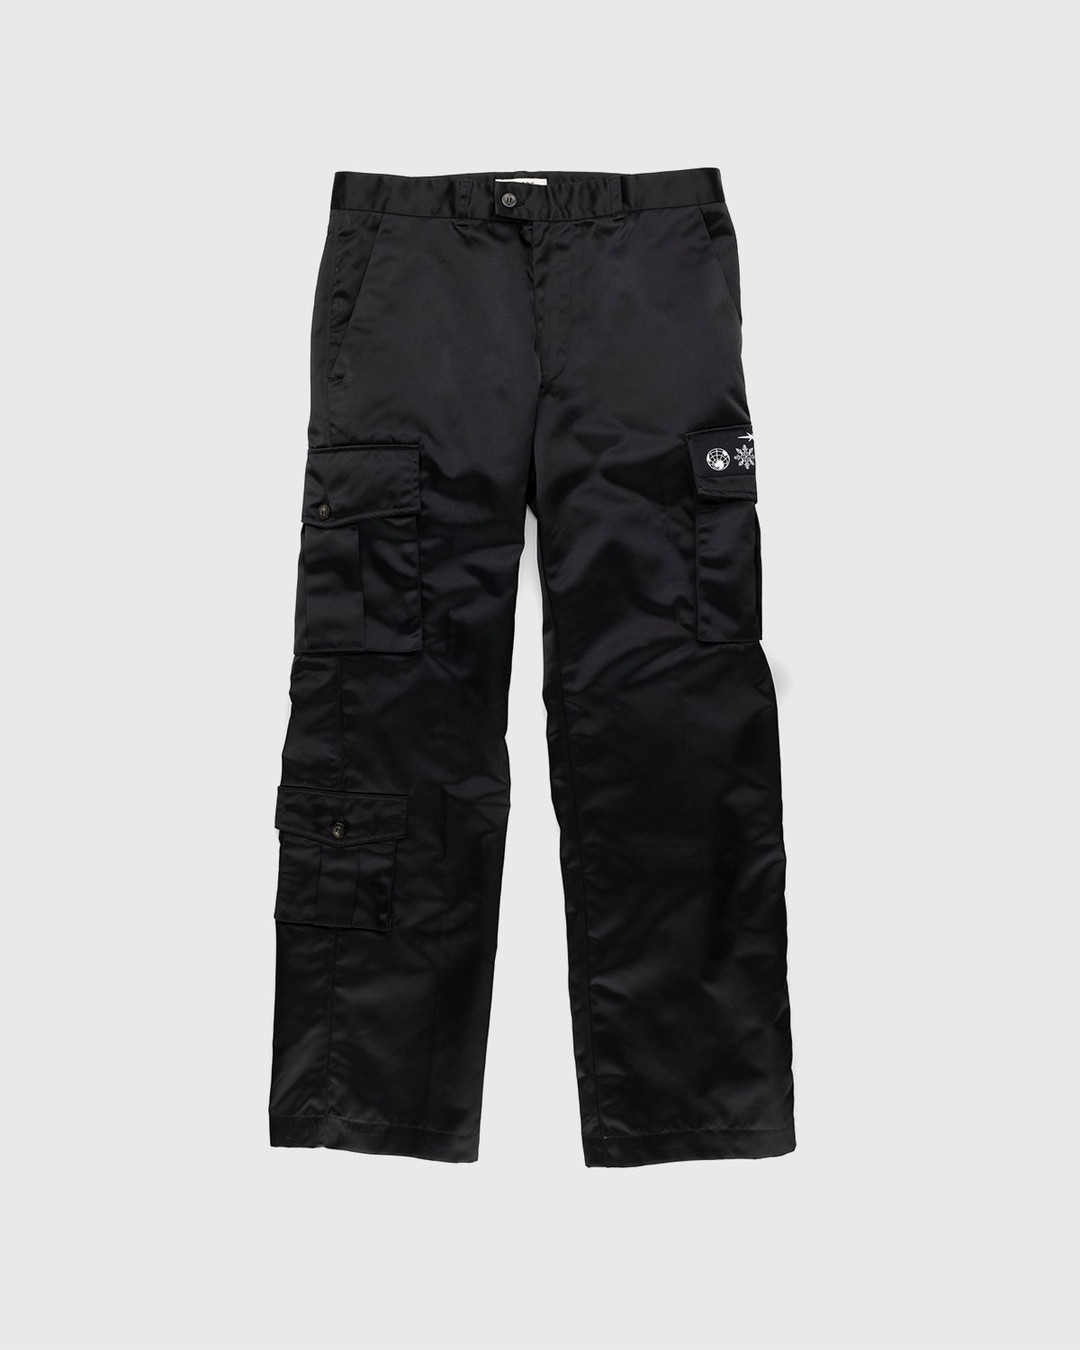 Phipps – Uniform Dad Pant Black - Pants - Black - Image 1